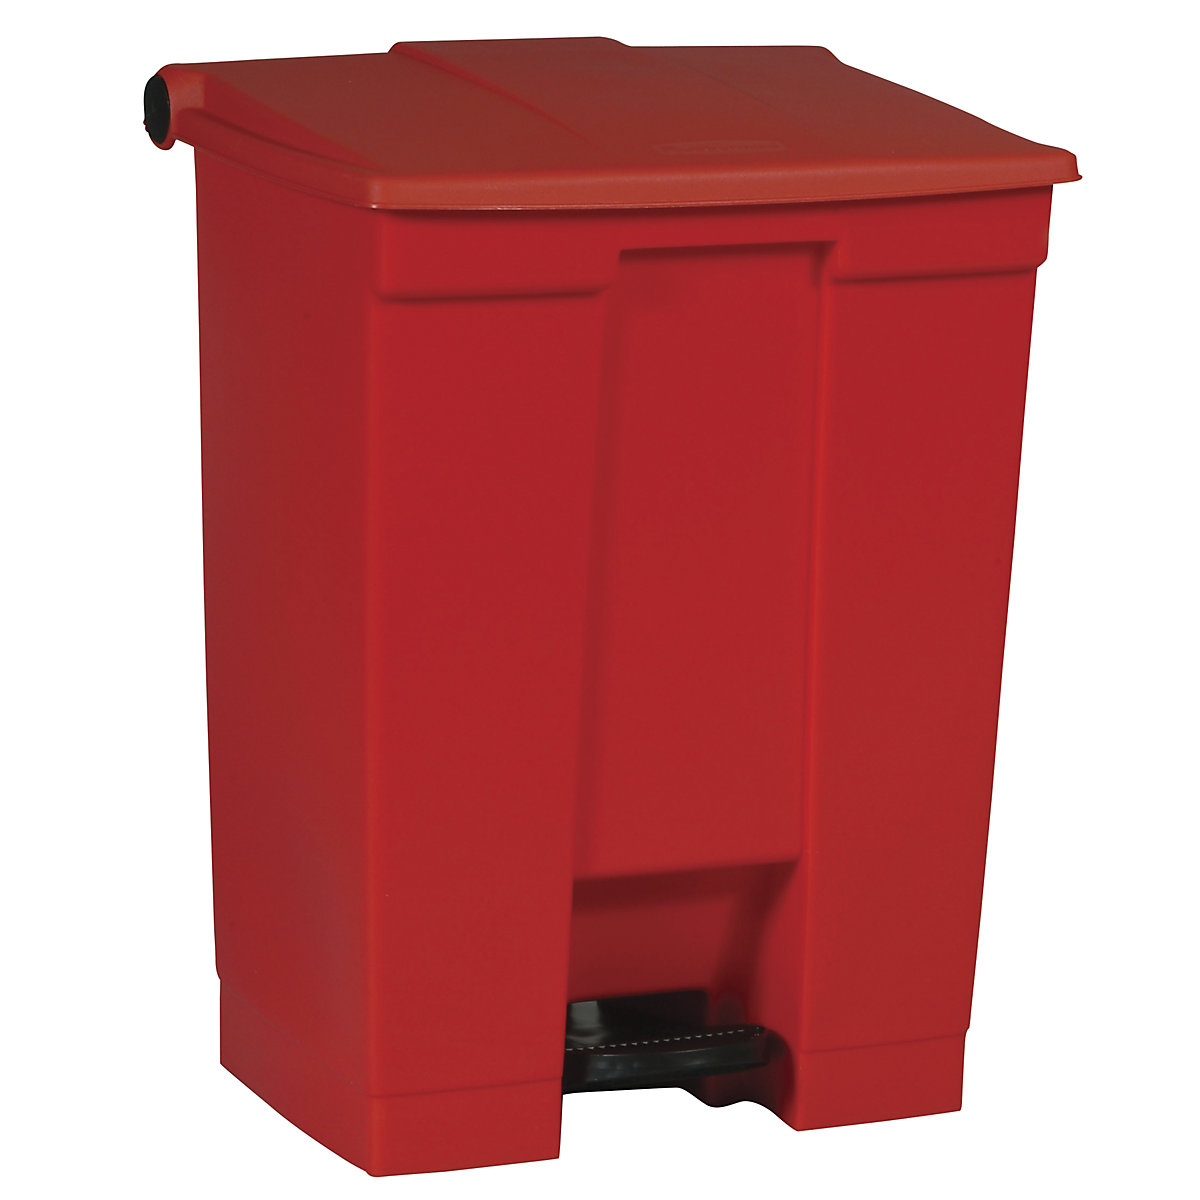 Ipari pedálos hulladékgyűjtő – Rubbermaid, űrtartalom 68 l, piros-4